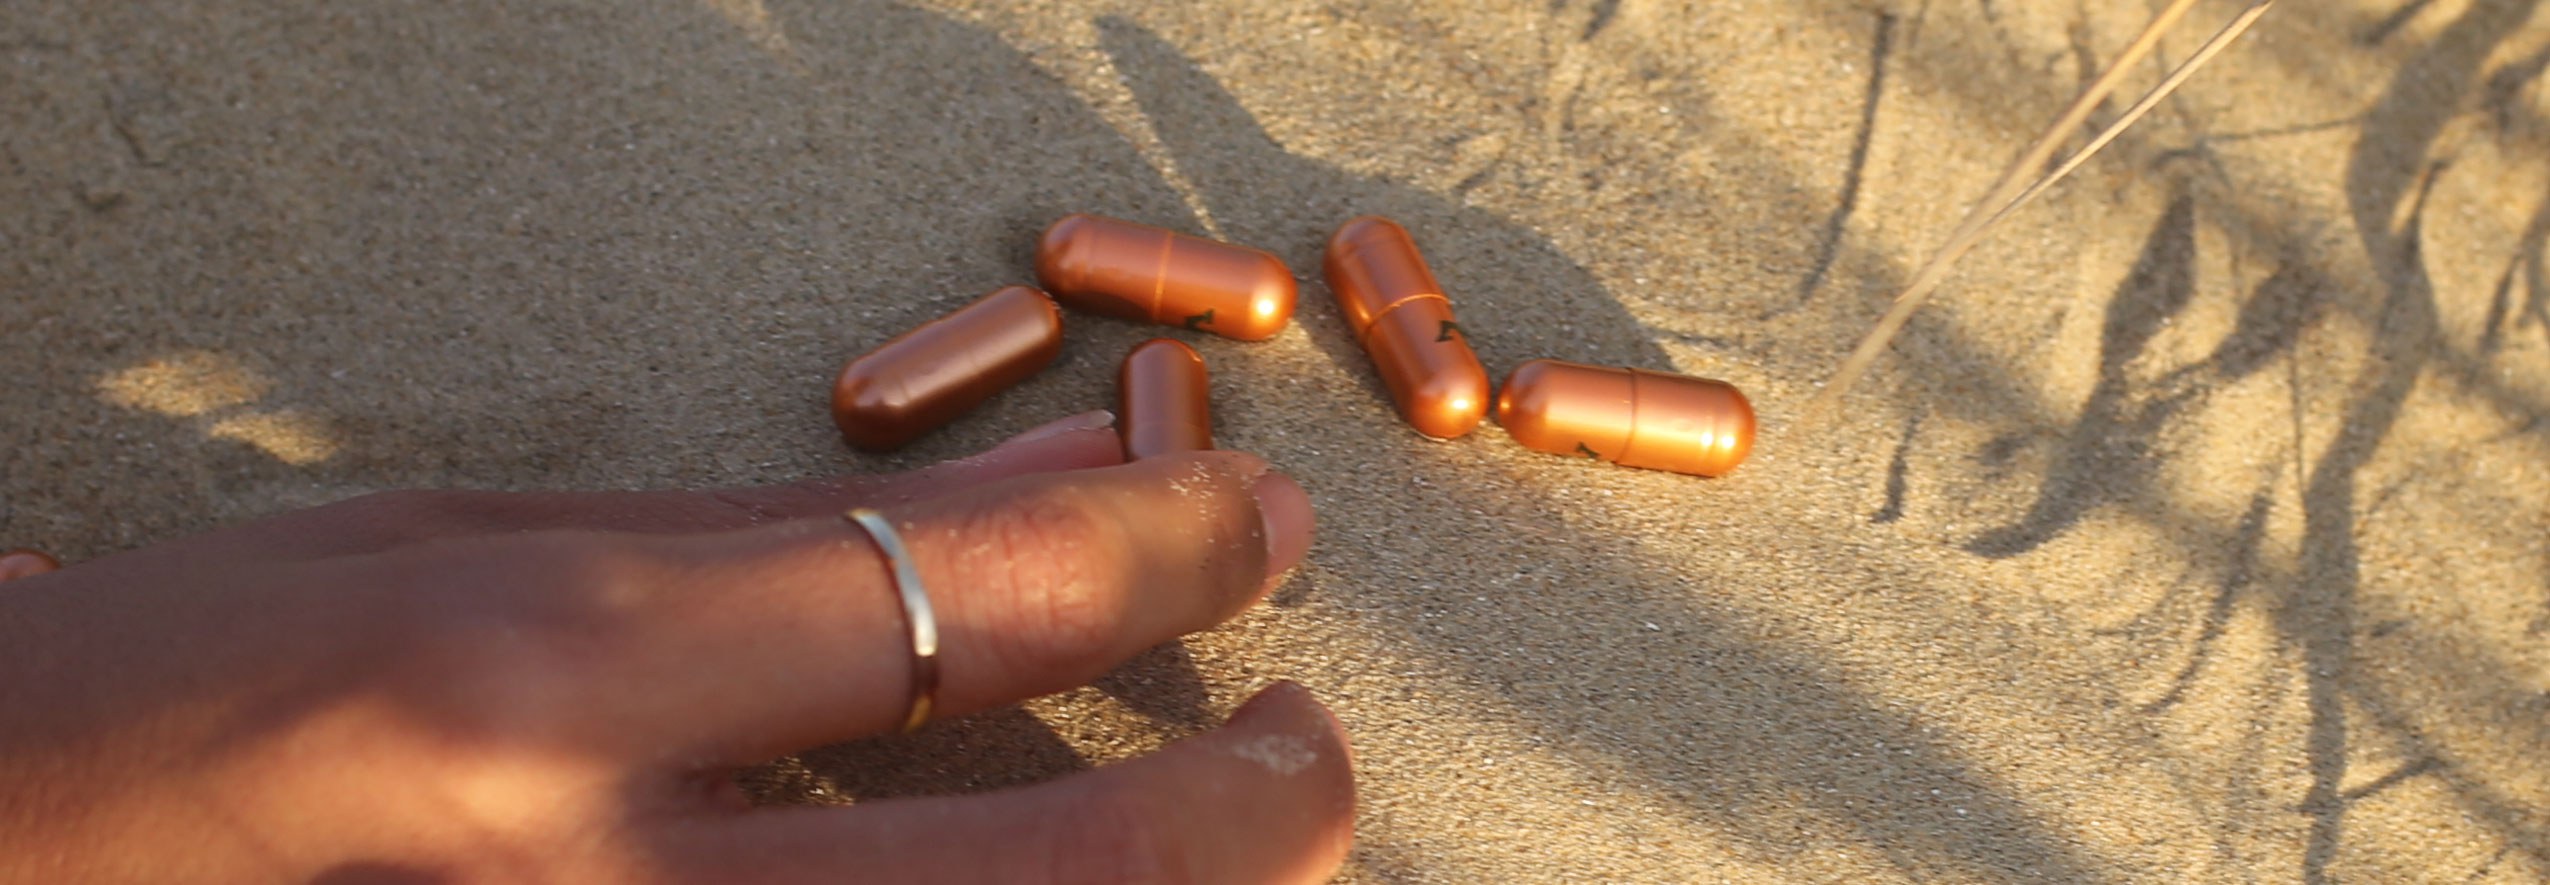 pills on sand